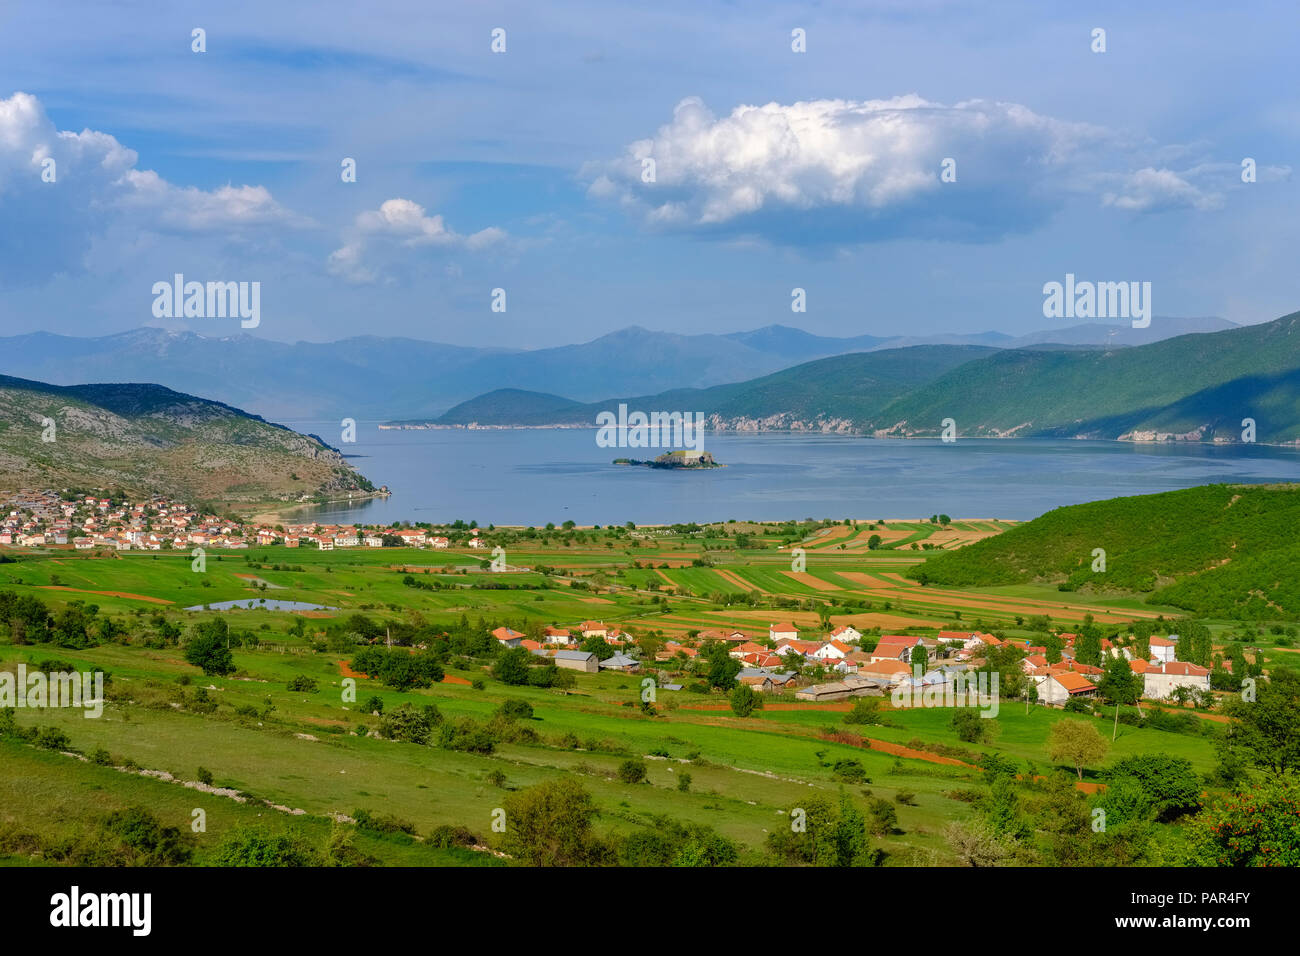 Albania, Prespa, il Parco Nazionale del lago Prespa con Maligrad Isola e villaggi e Lejthize Liqenas, la Grecia e la Macedonia in background Foto Stock